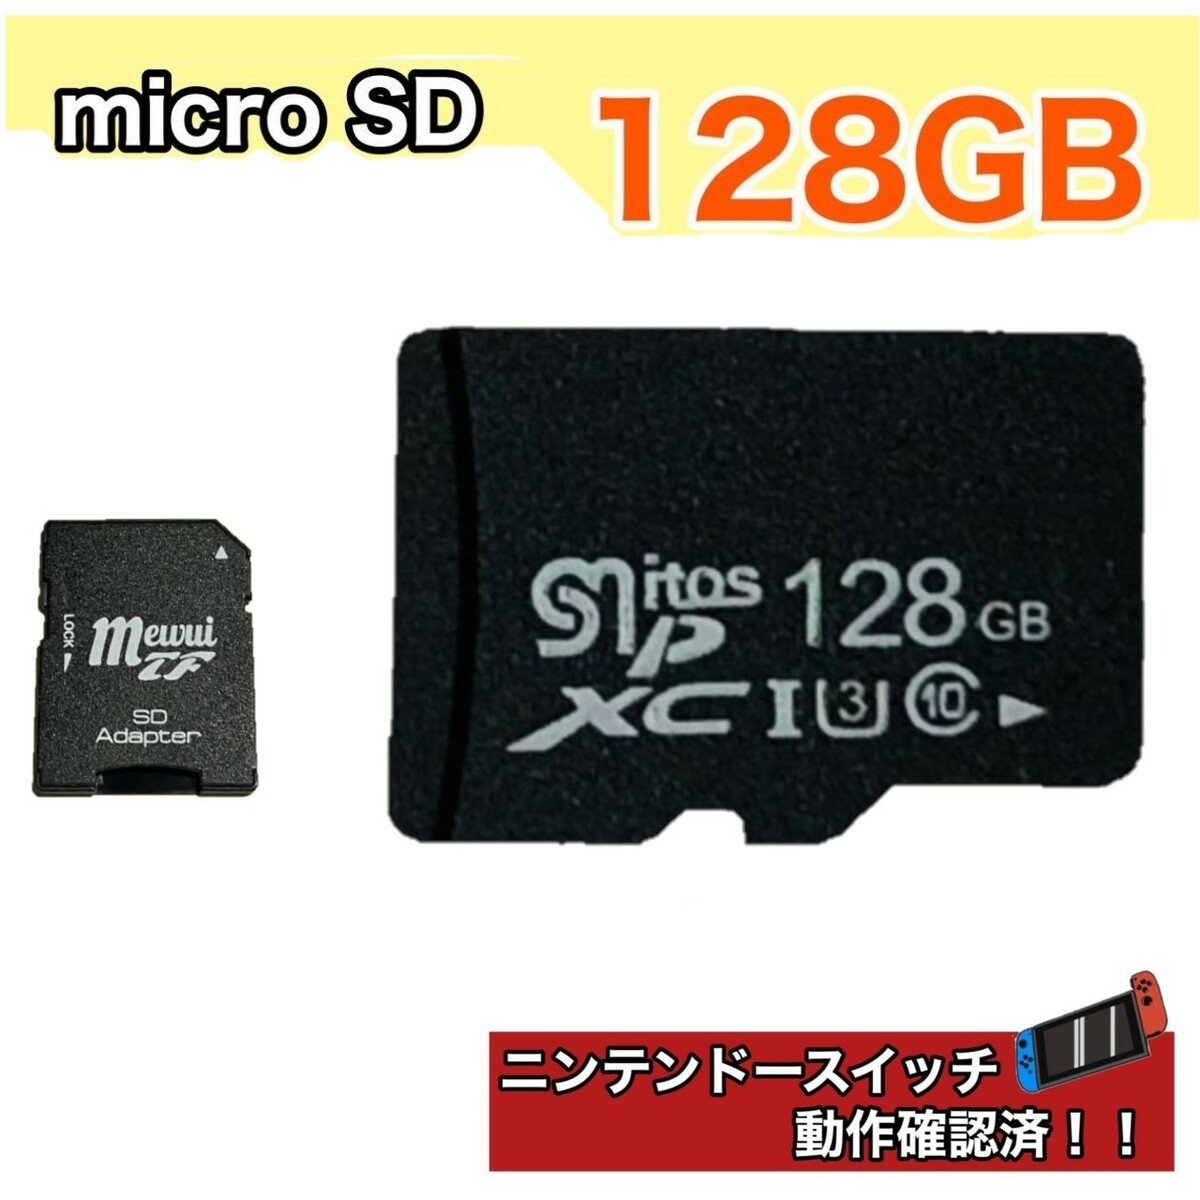 マイクロsdカード 128GB microSDカード 読込み84MB s 任天堂スイッチ動作確認済み ドライブスマホ ドライブレコーダー ポイント消化 SD変換アダプタ付き<br> パッケージ無し